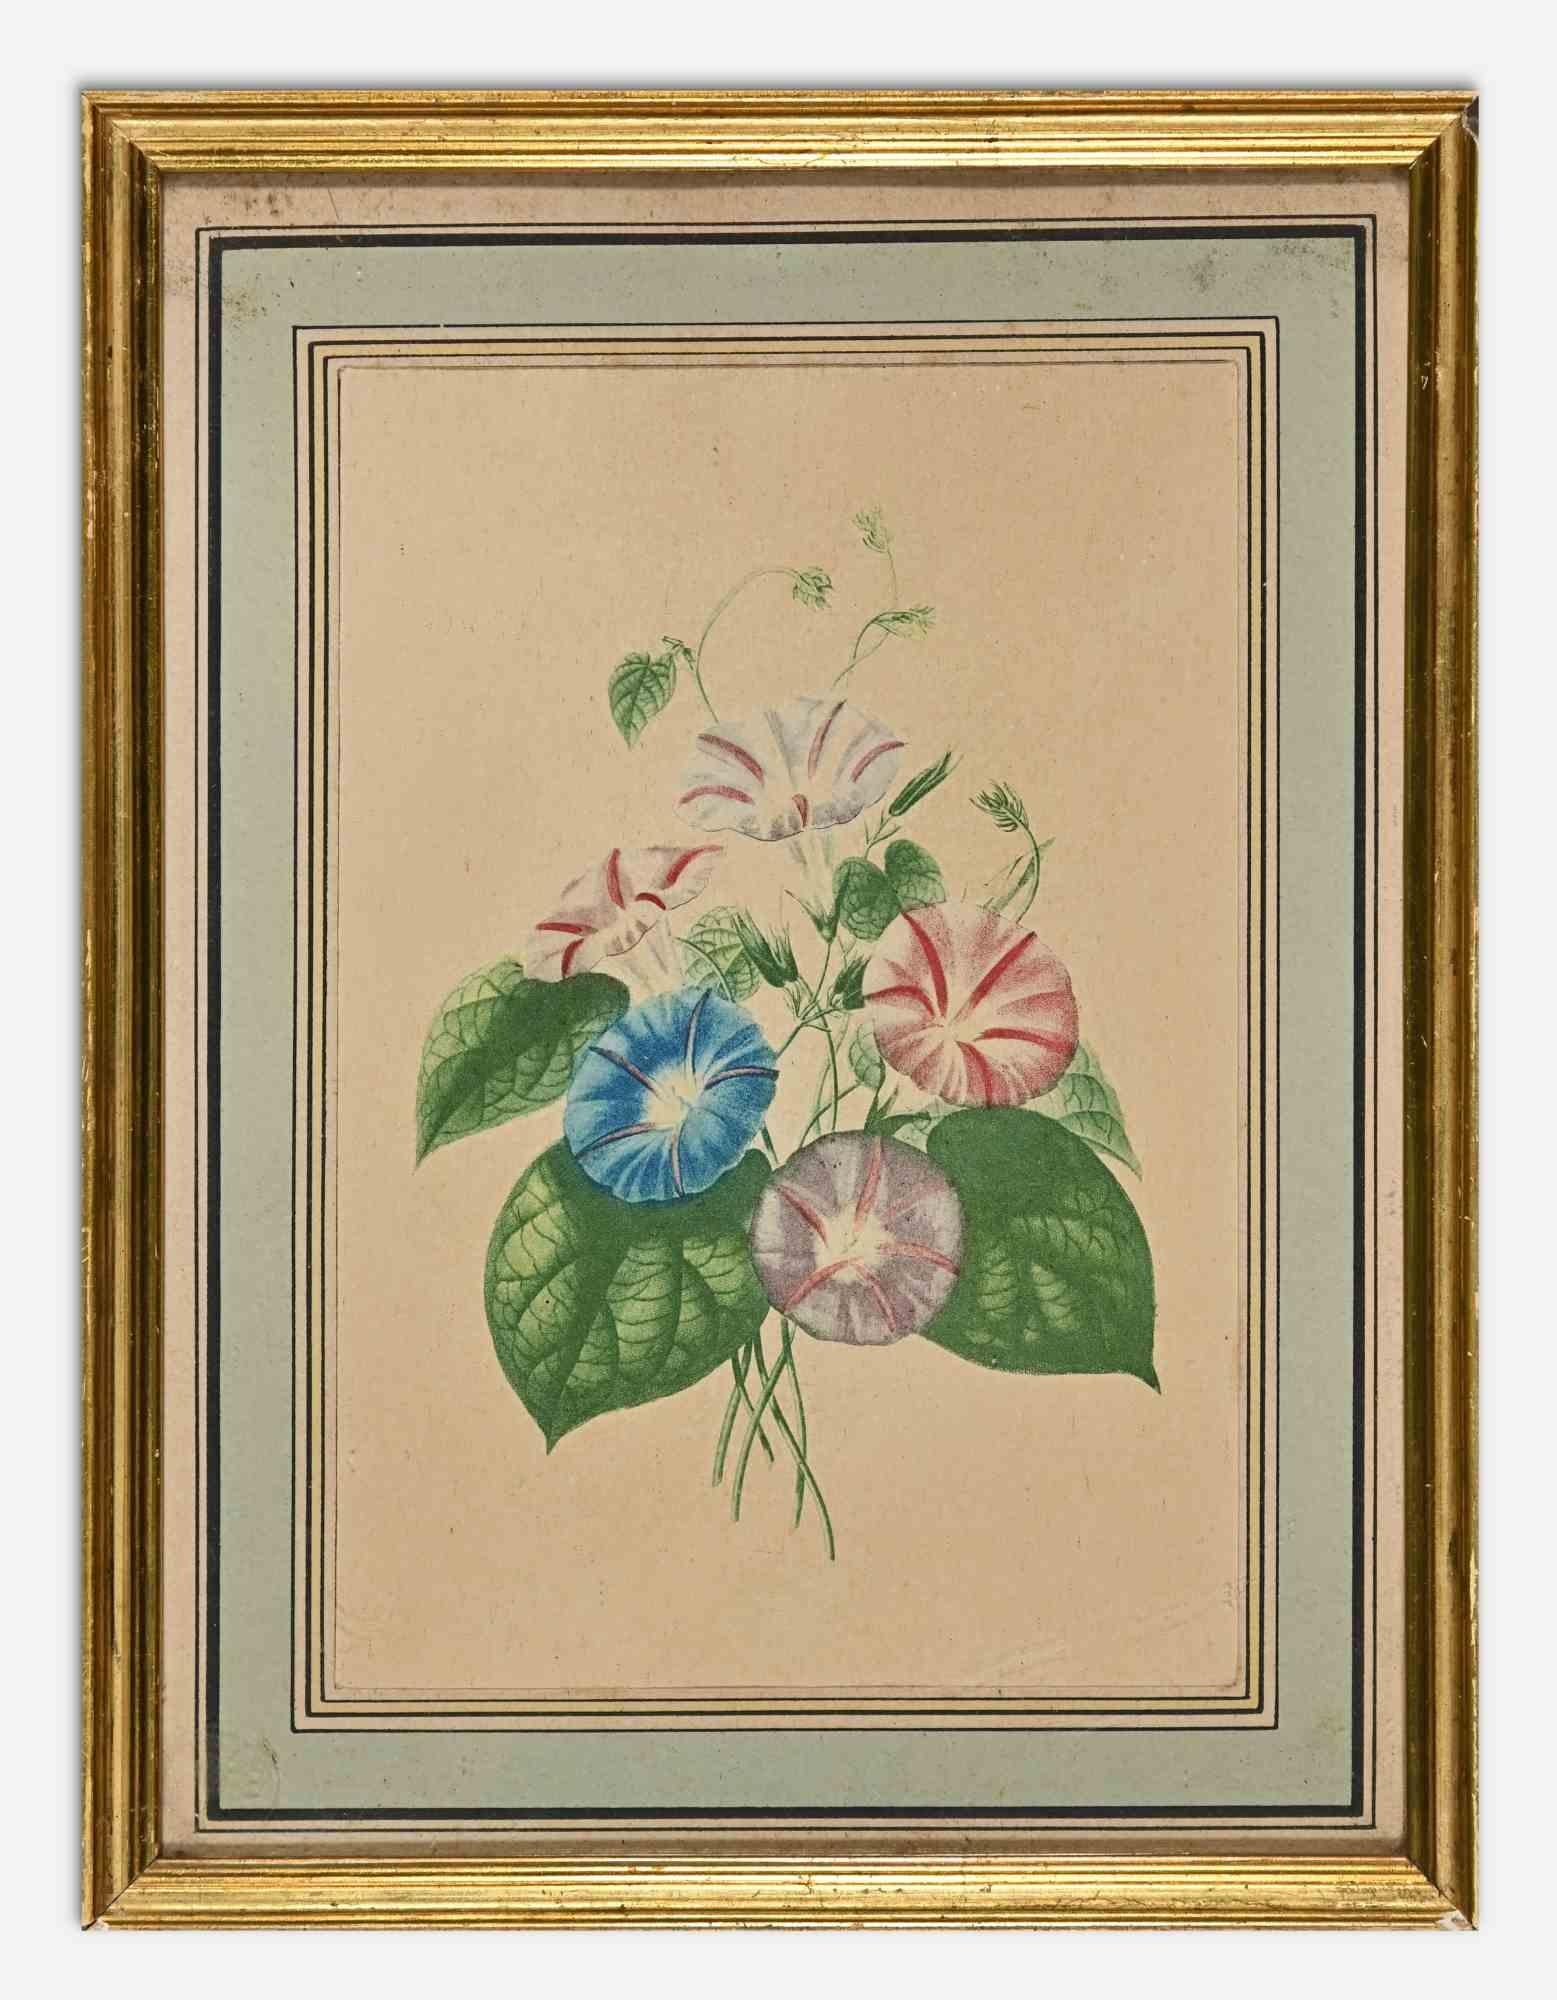 Die rosa und blauen Blumen sind ein modernes Kunstwerk von Edouard Maubert aus dem 19. Jahrhundert.

Handkolorierte Radierung.

Einschließlich Rahmen.

Guter Zustand (Vergilbung des Papiers).
